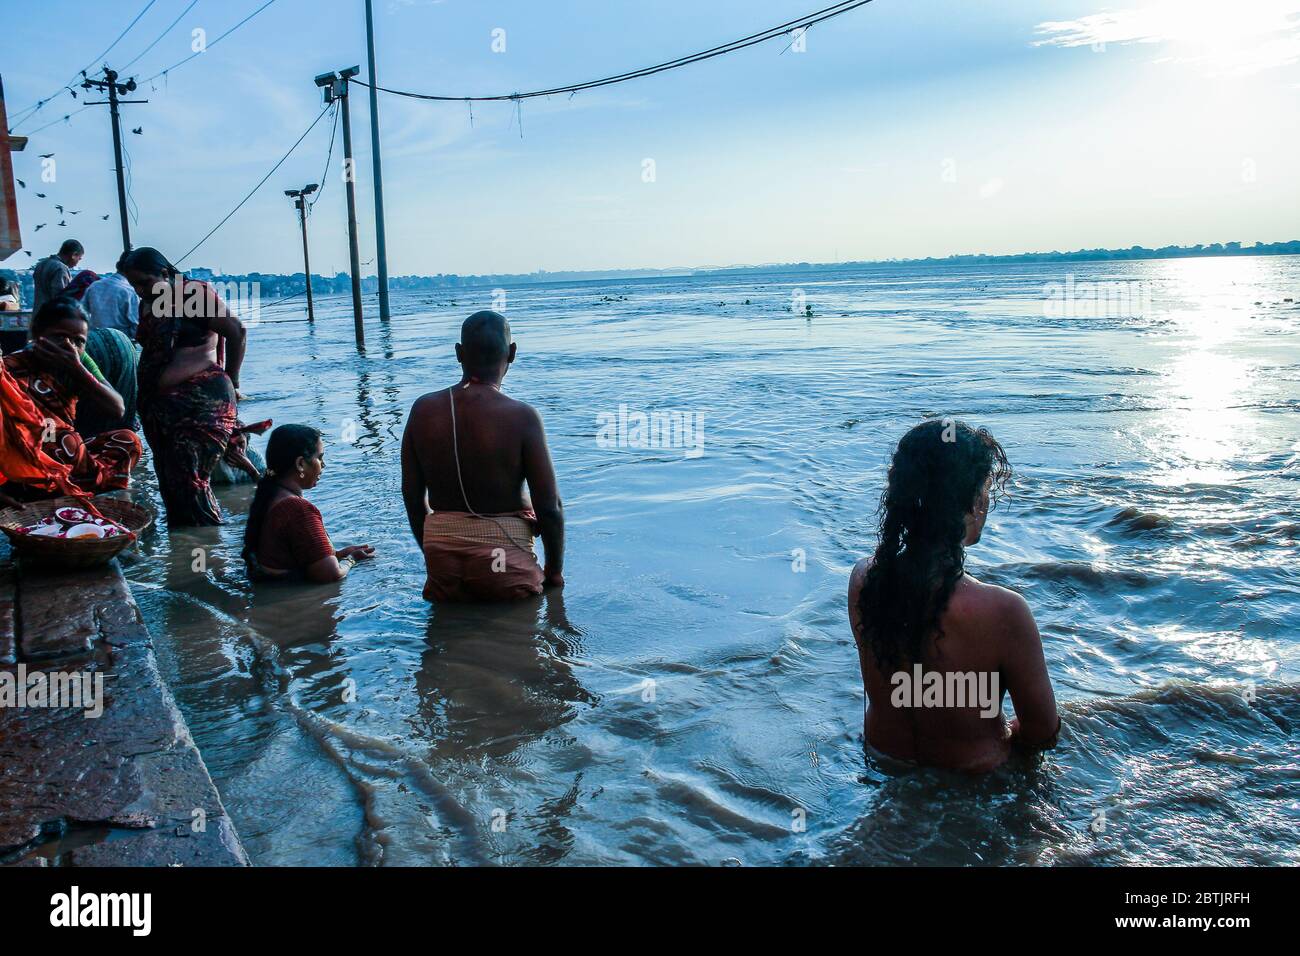 Indien, Varanasi - Bundesstaat Uttar Pradesh, 31. Juli 2013. Nach den Monsunen. Zahlreiche Gläubige baden im Fluss und führen ihre täglichen Gebete aus. Stockfoto